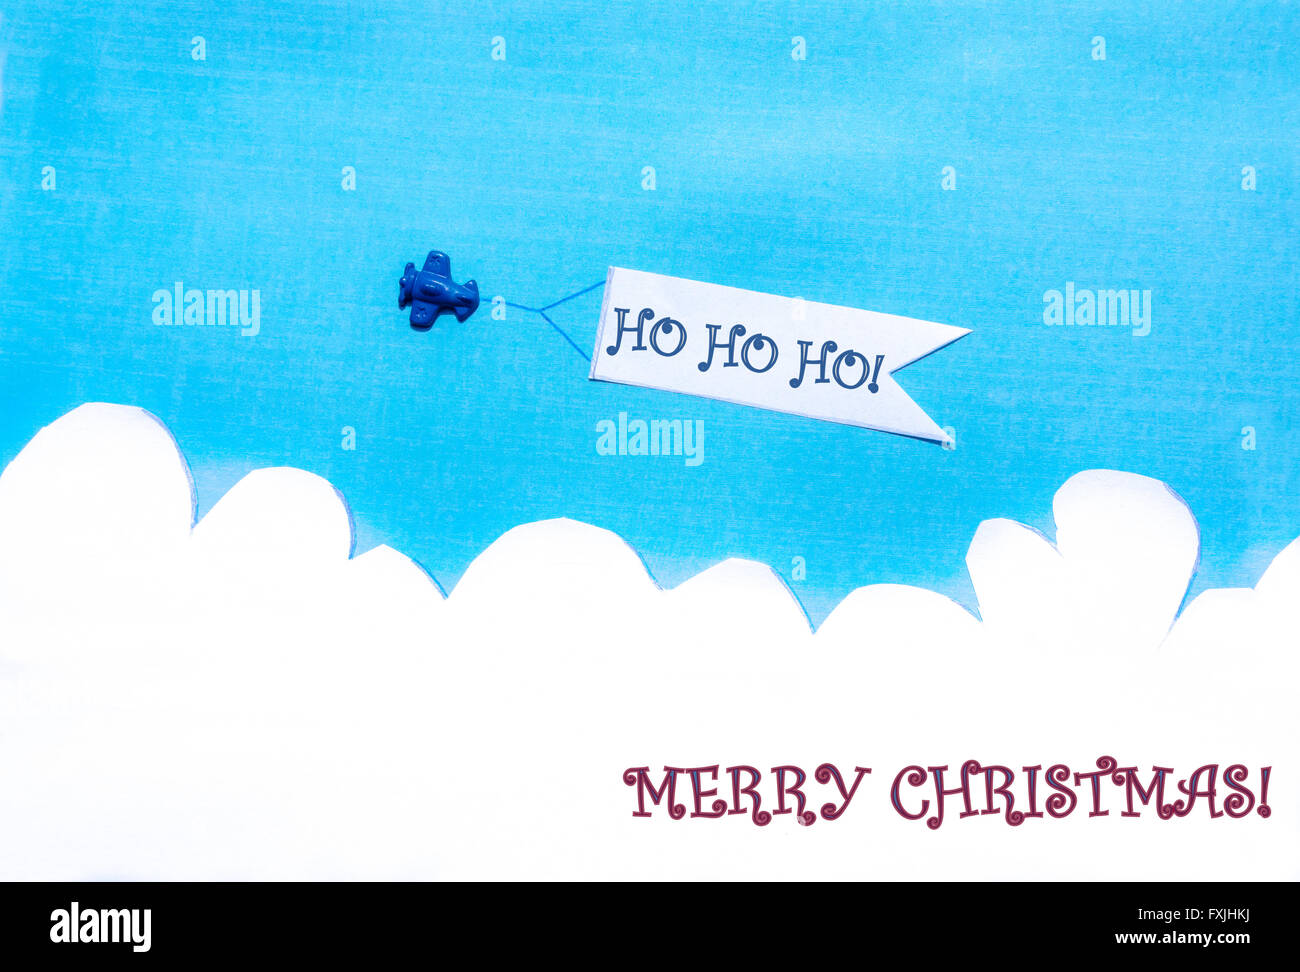 Avion tirant une bannière blanche sur ciel bleu. Joyeux Noël. Ho ho ho ! Banque D'Images